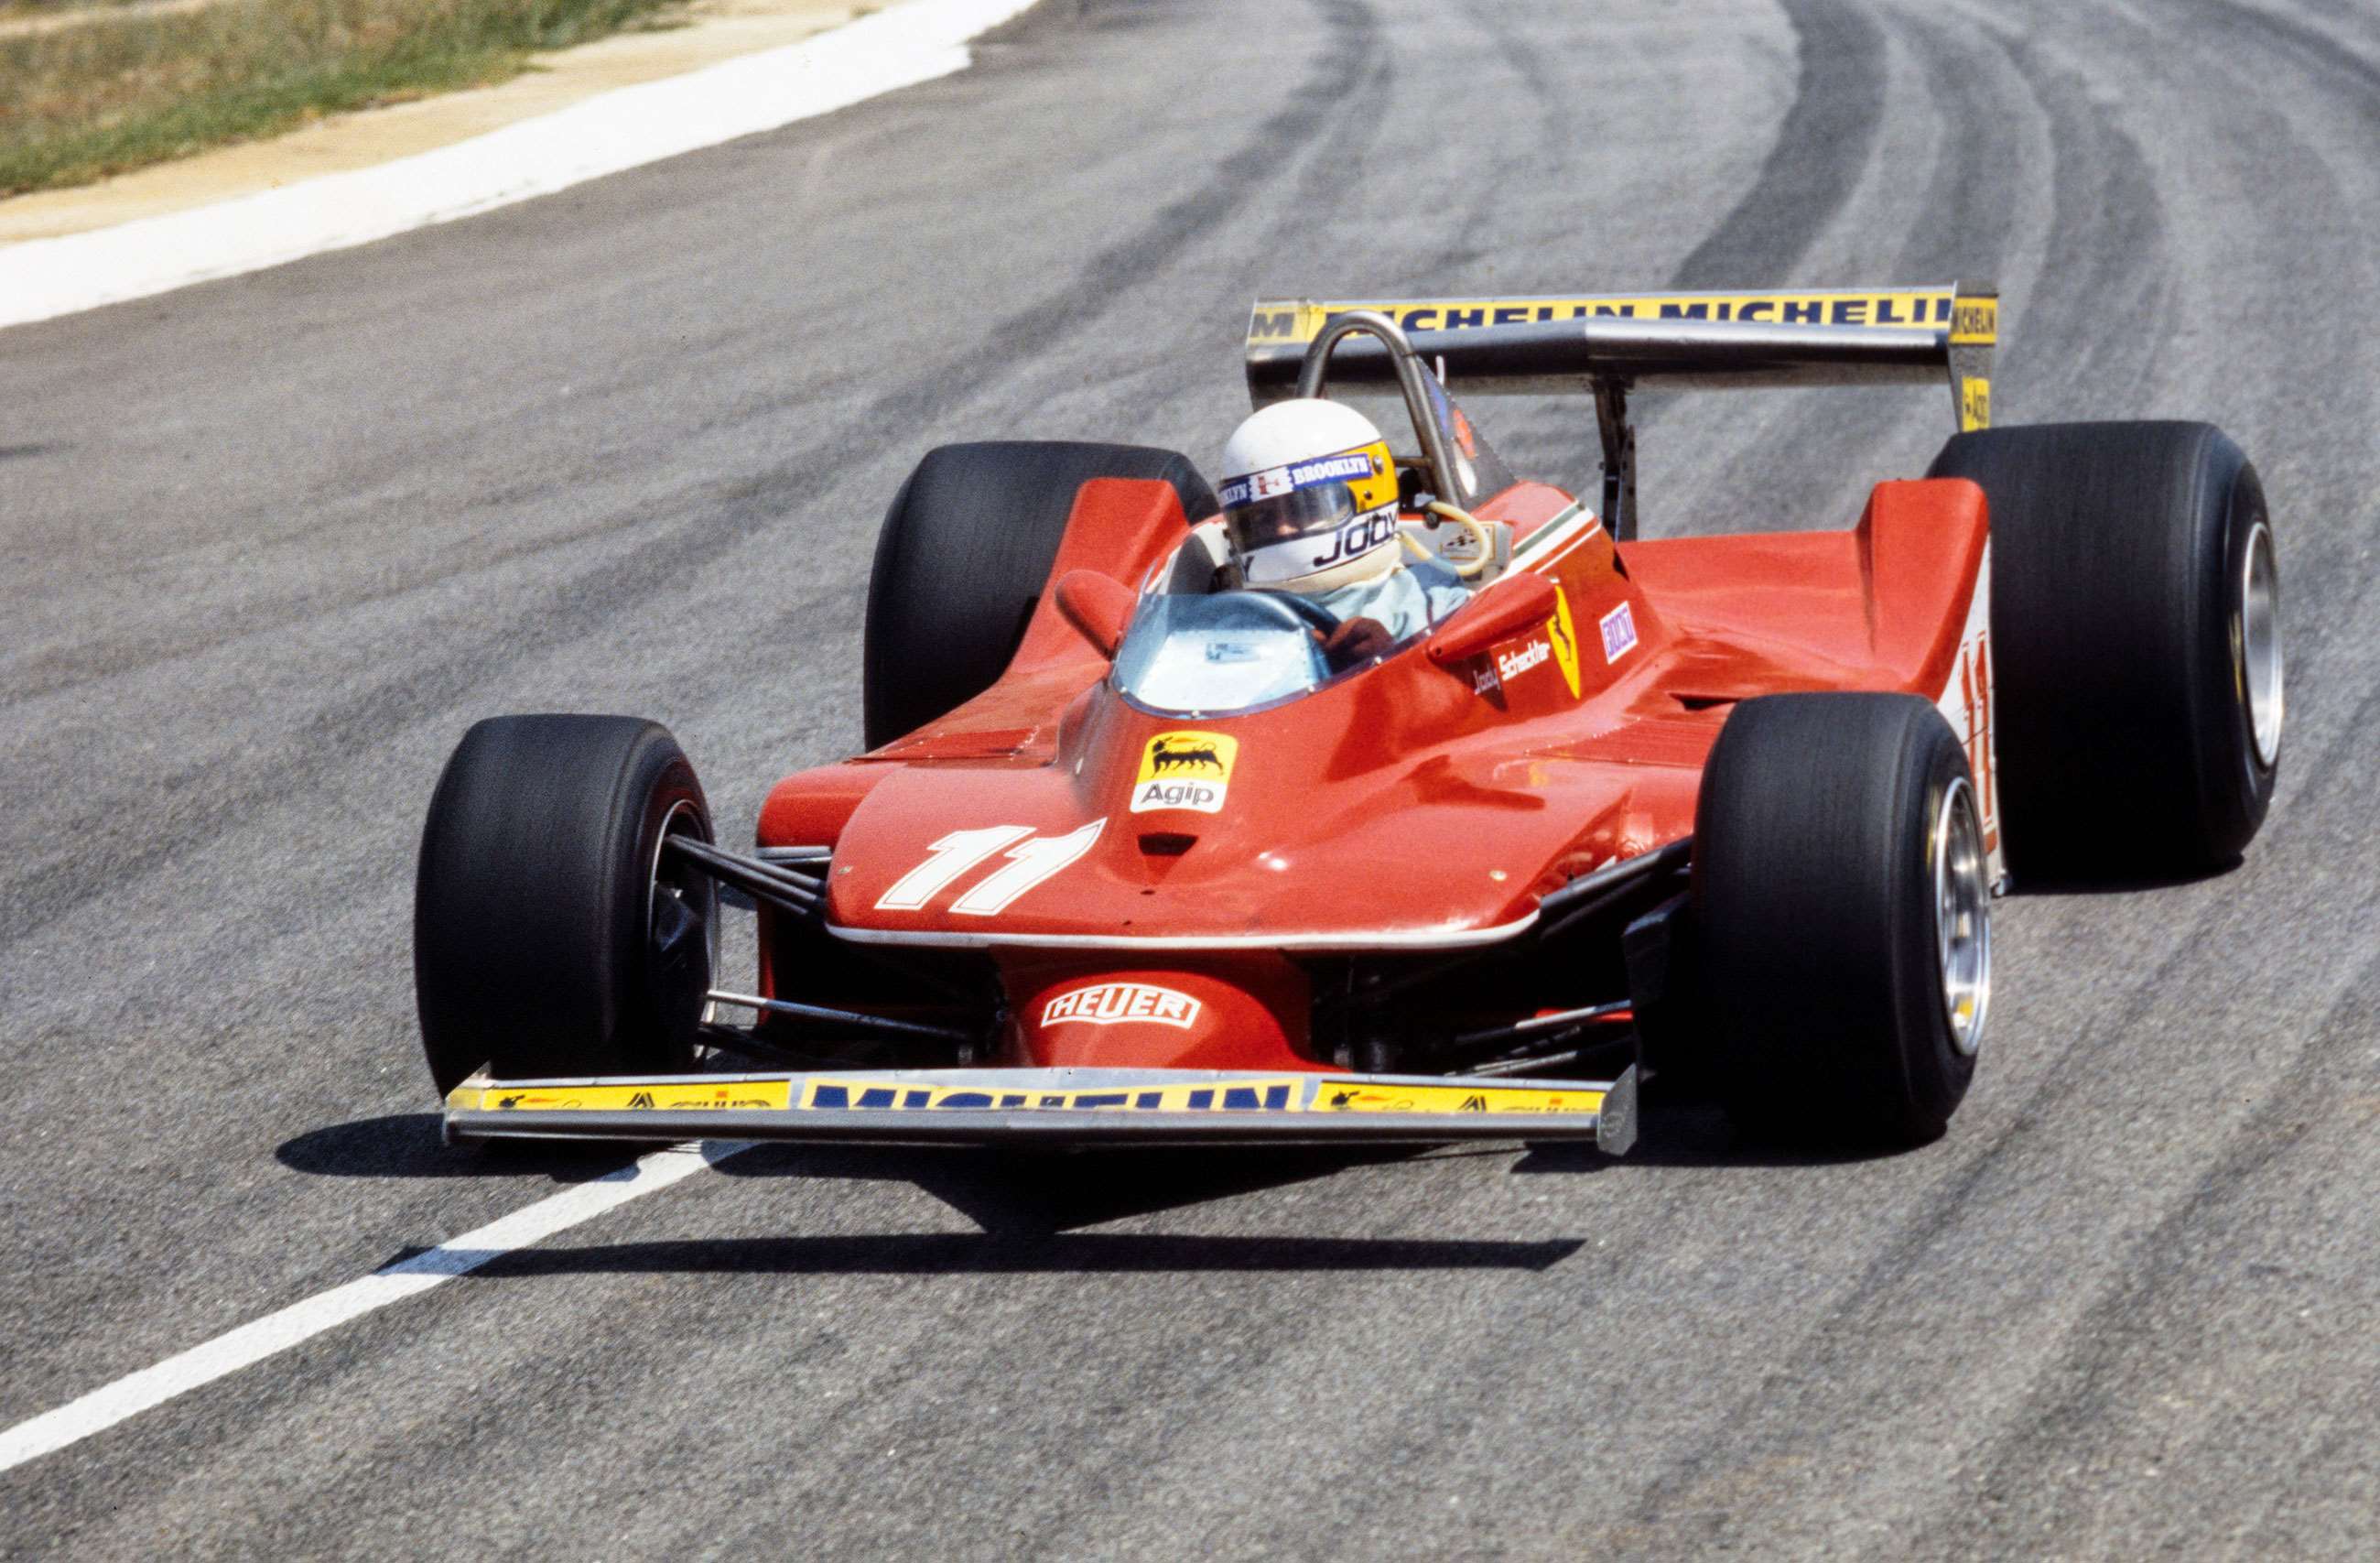 f1-1979-kyalami-jody-scheckter-ferrari-312t4-mi-goodwood-17112020.jpg